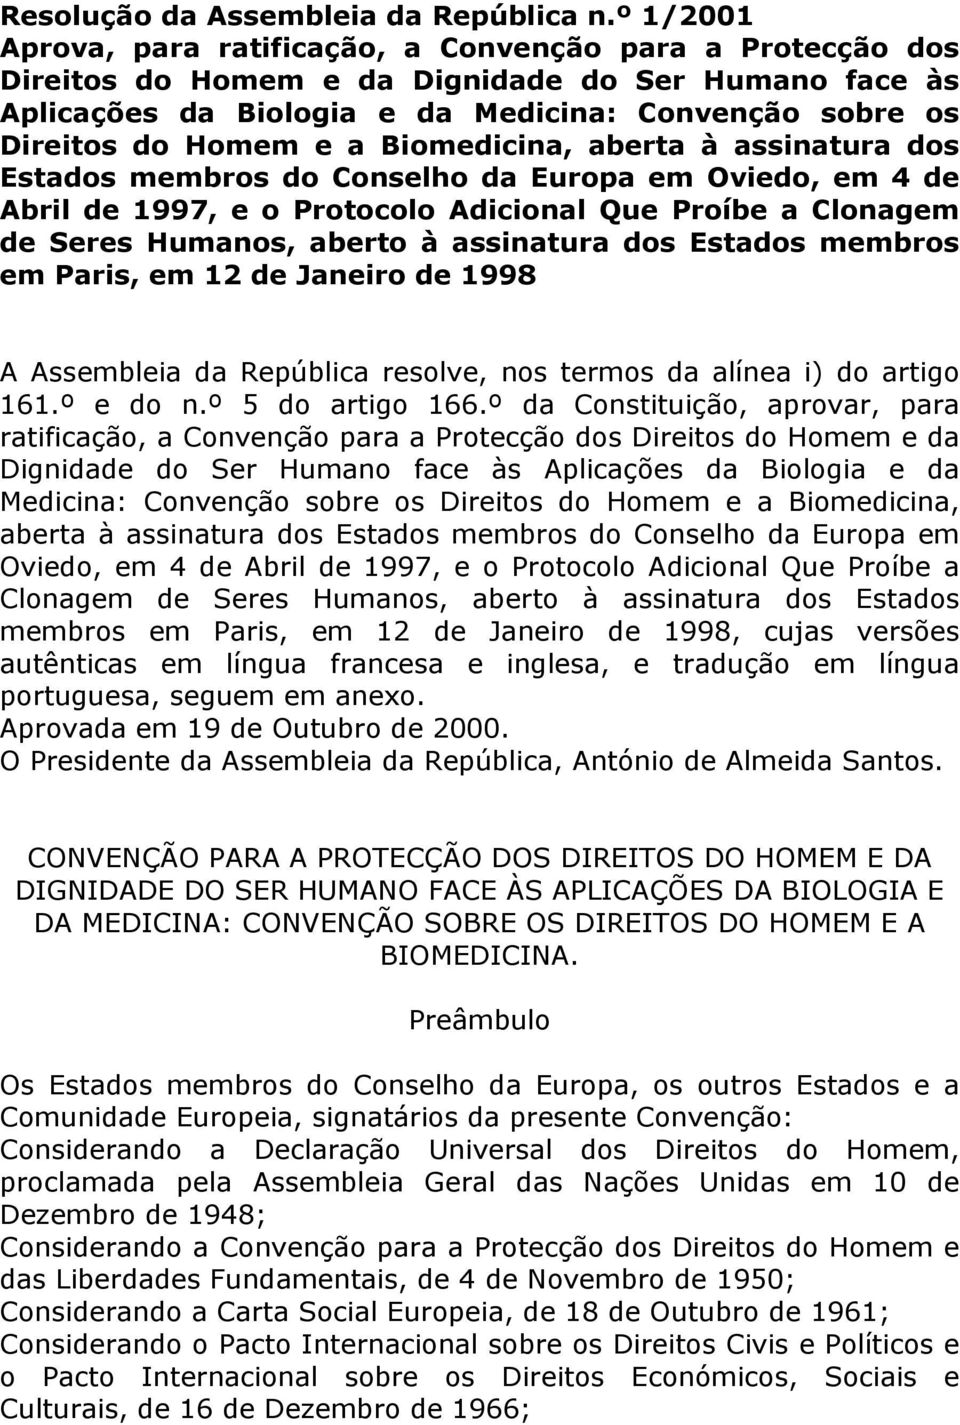 a Biomedicina, aberta à assinatura dos Estados membros do Conselho da Europa em Oviedo, em 4 de Abril de 1997, e o Protocolo Adicional Que Proíbe a Clonagem de Seres Humanos, aberto à assinatura dos